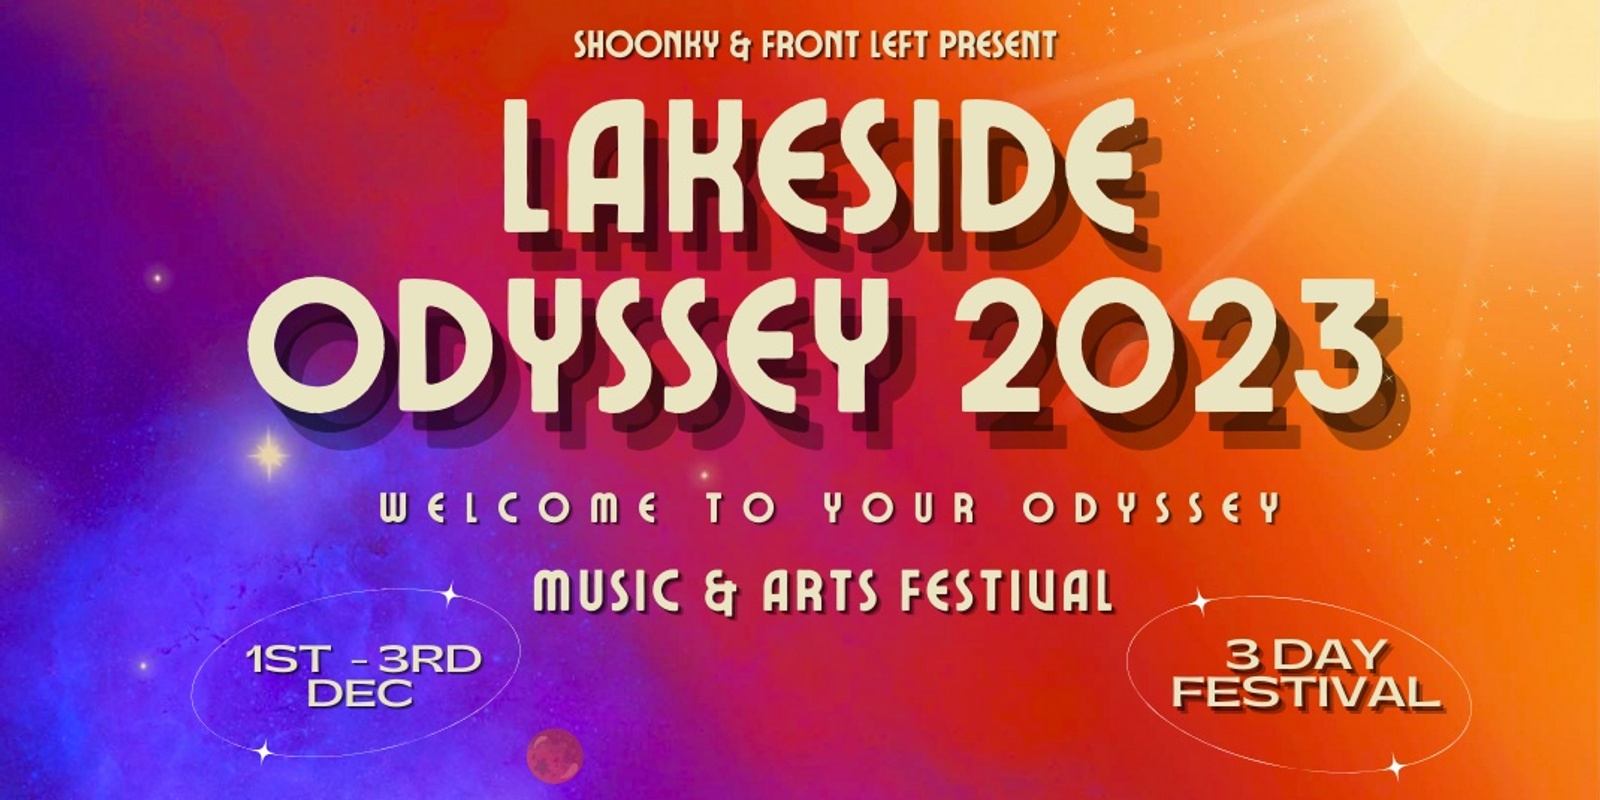 Banner image for Lakeside Odyssey Festival 2023 